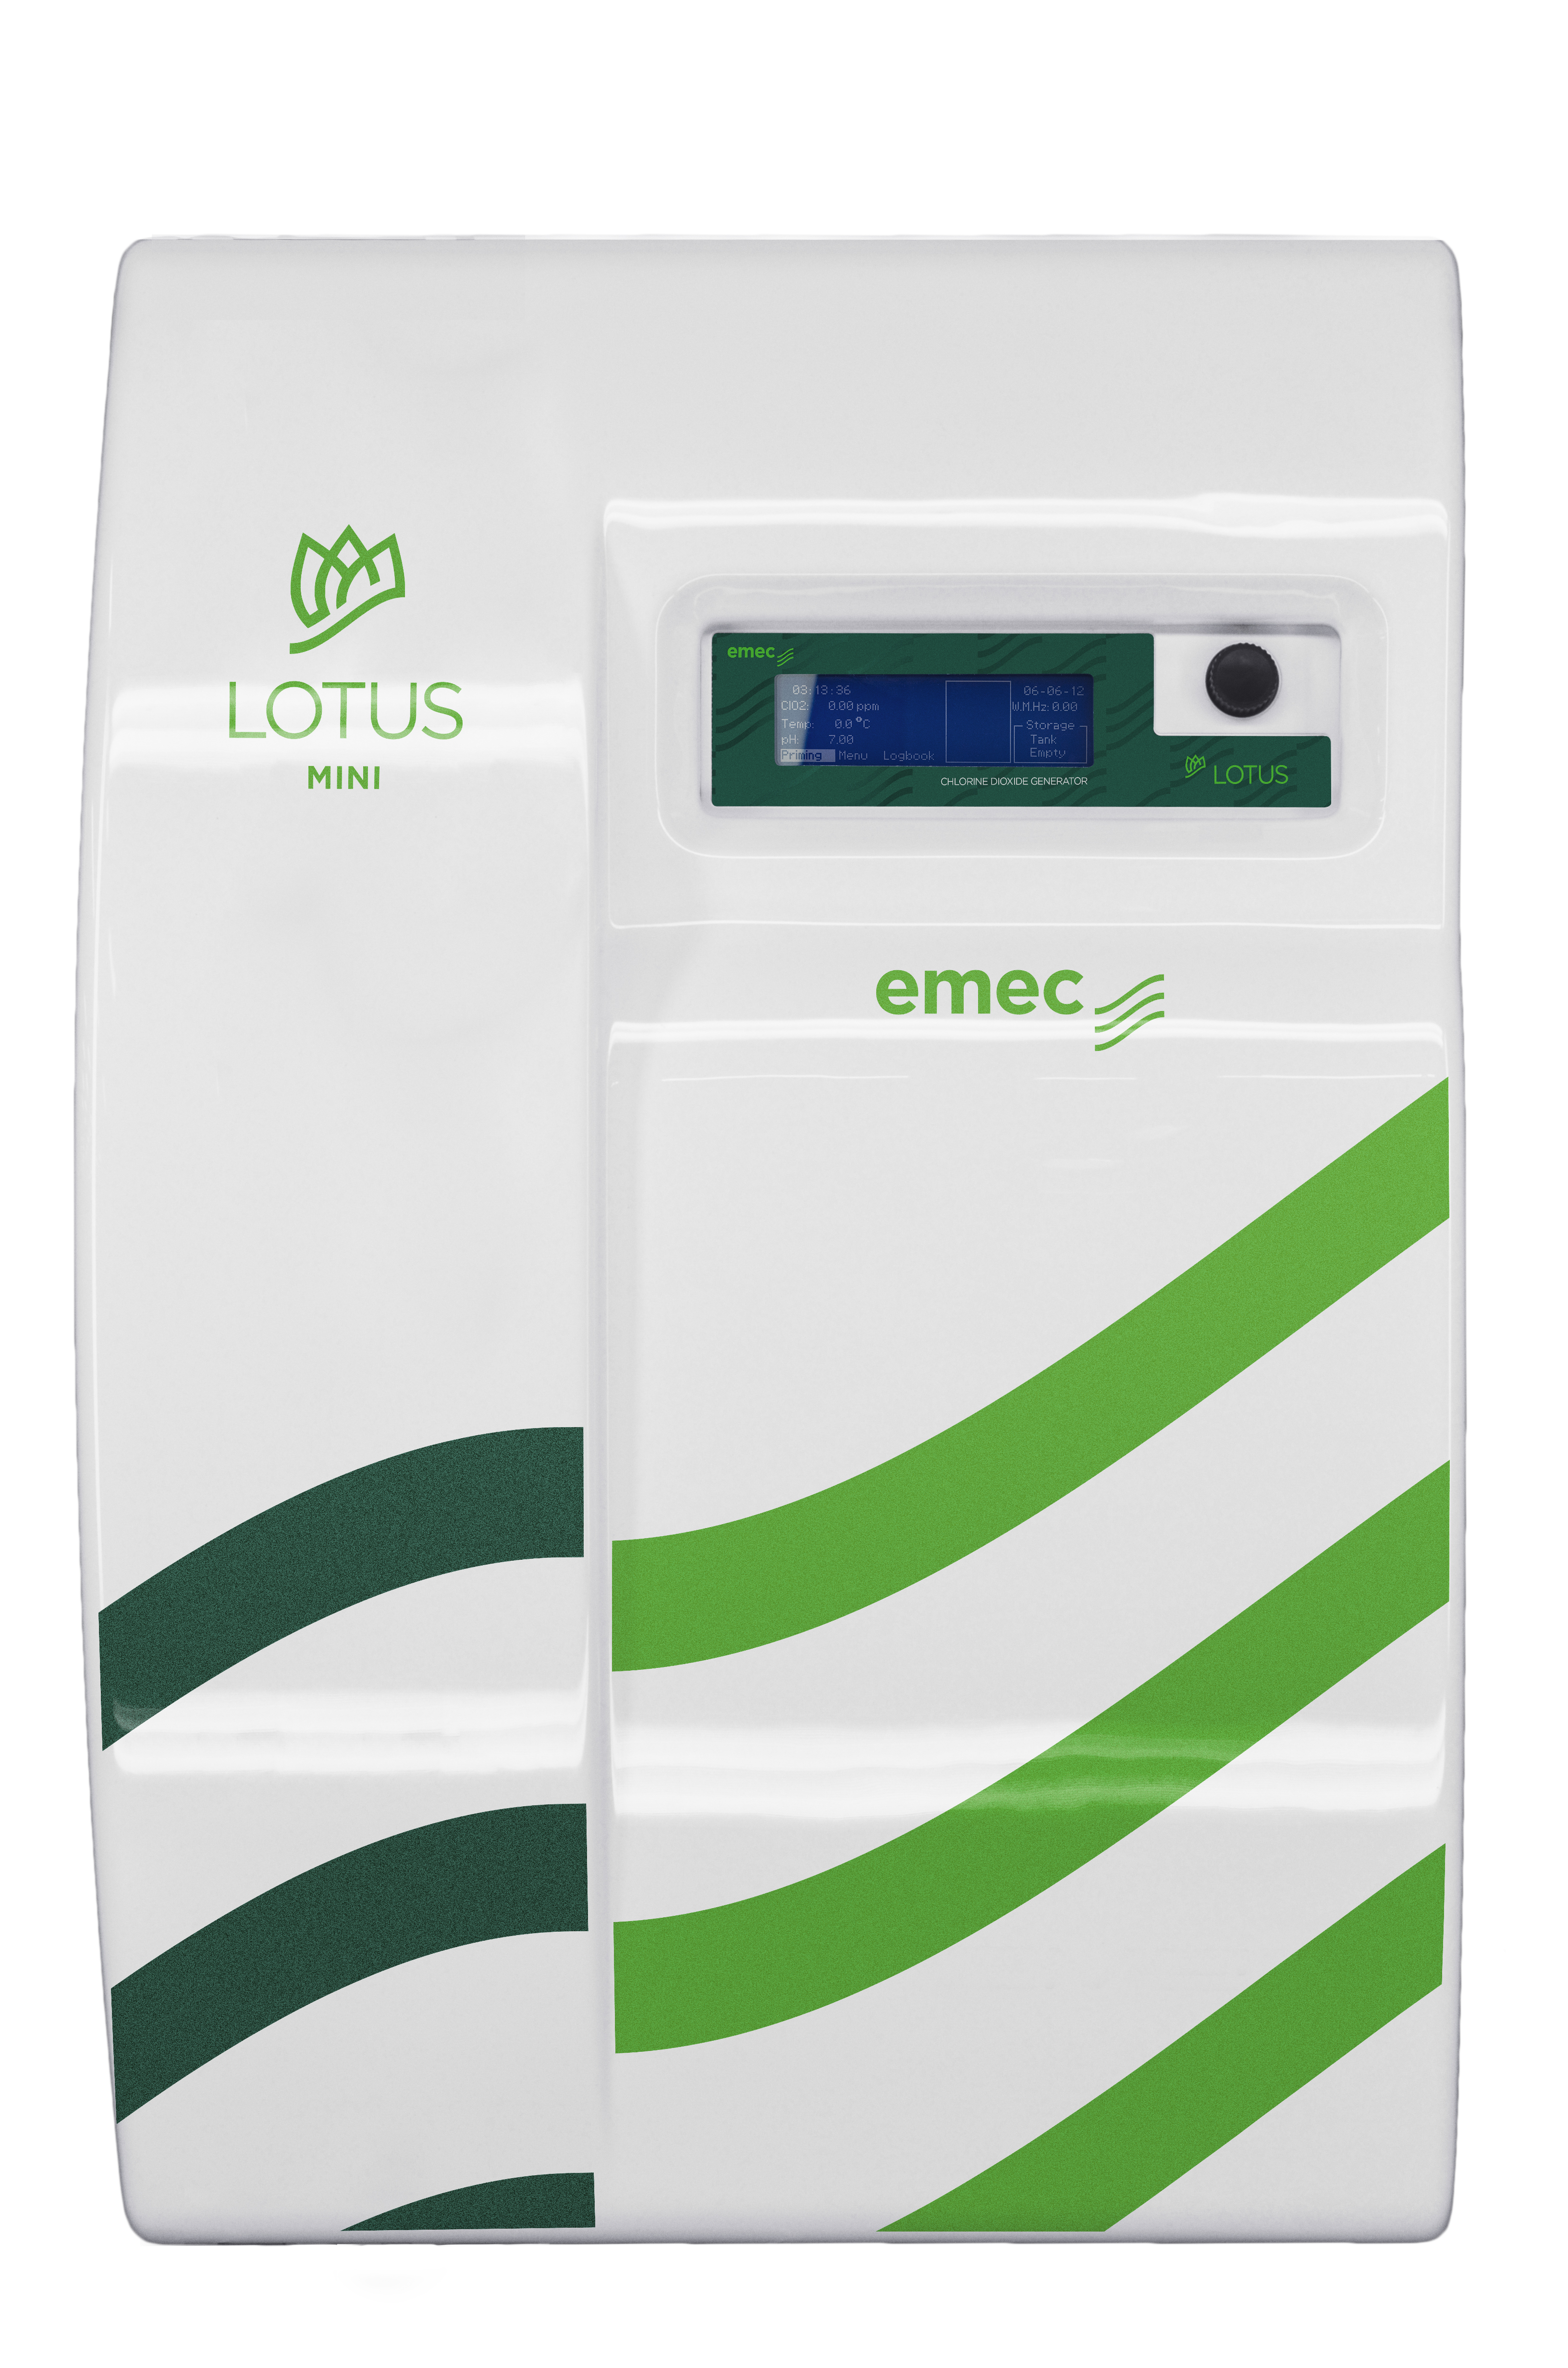 emec LOTUS MINI 8 - Chlorine dioxide generator